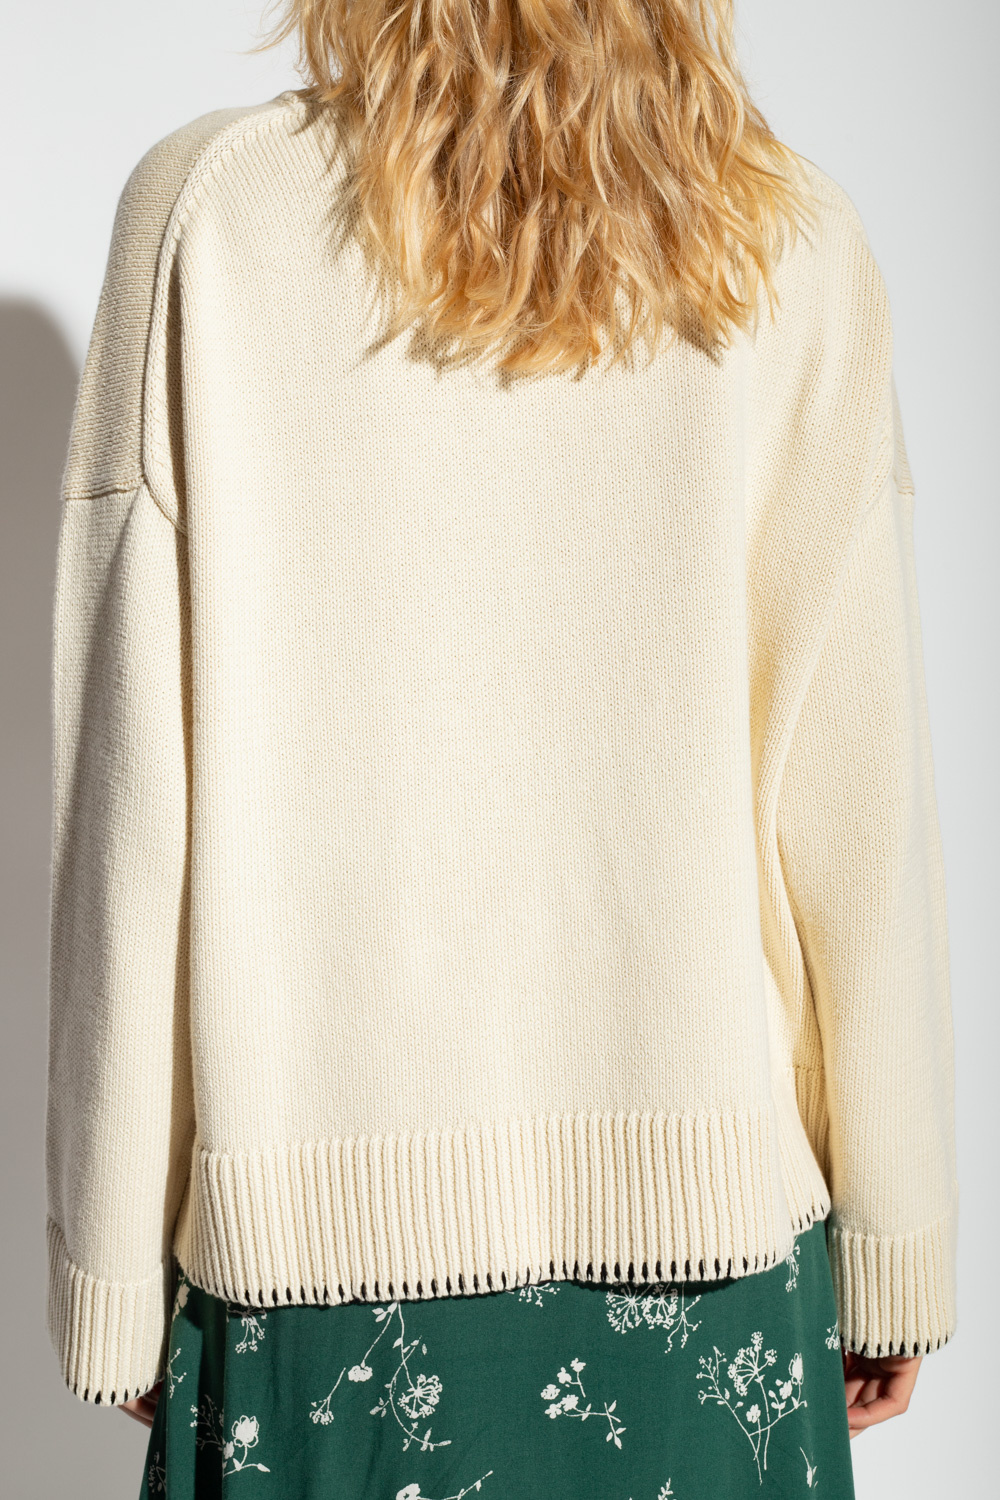 Samsøe Samsøe ‘Krista’ sweater in organic cotton